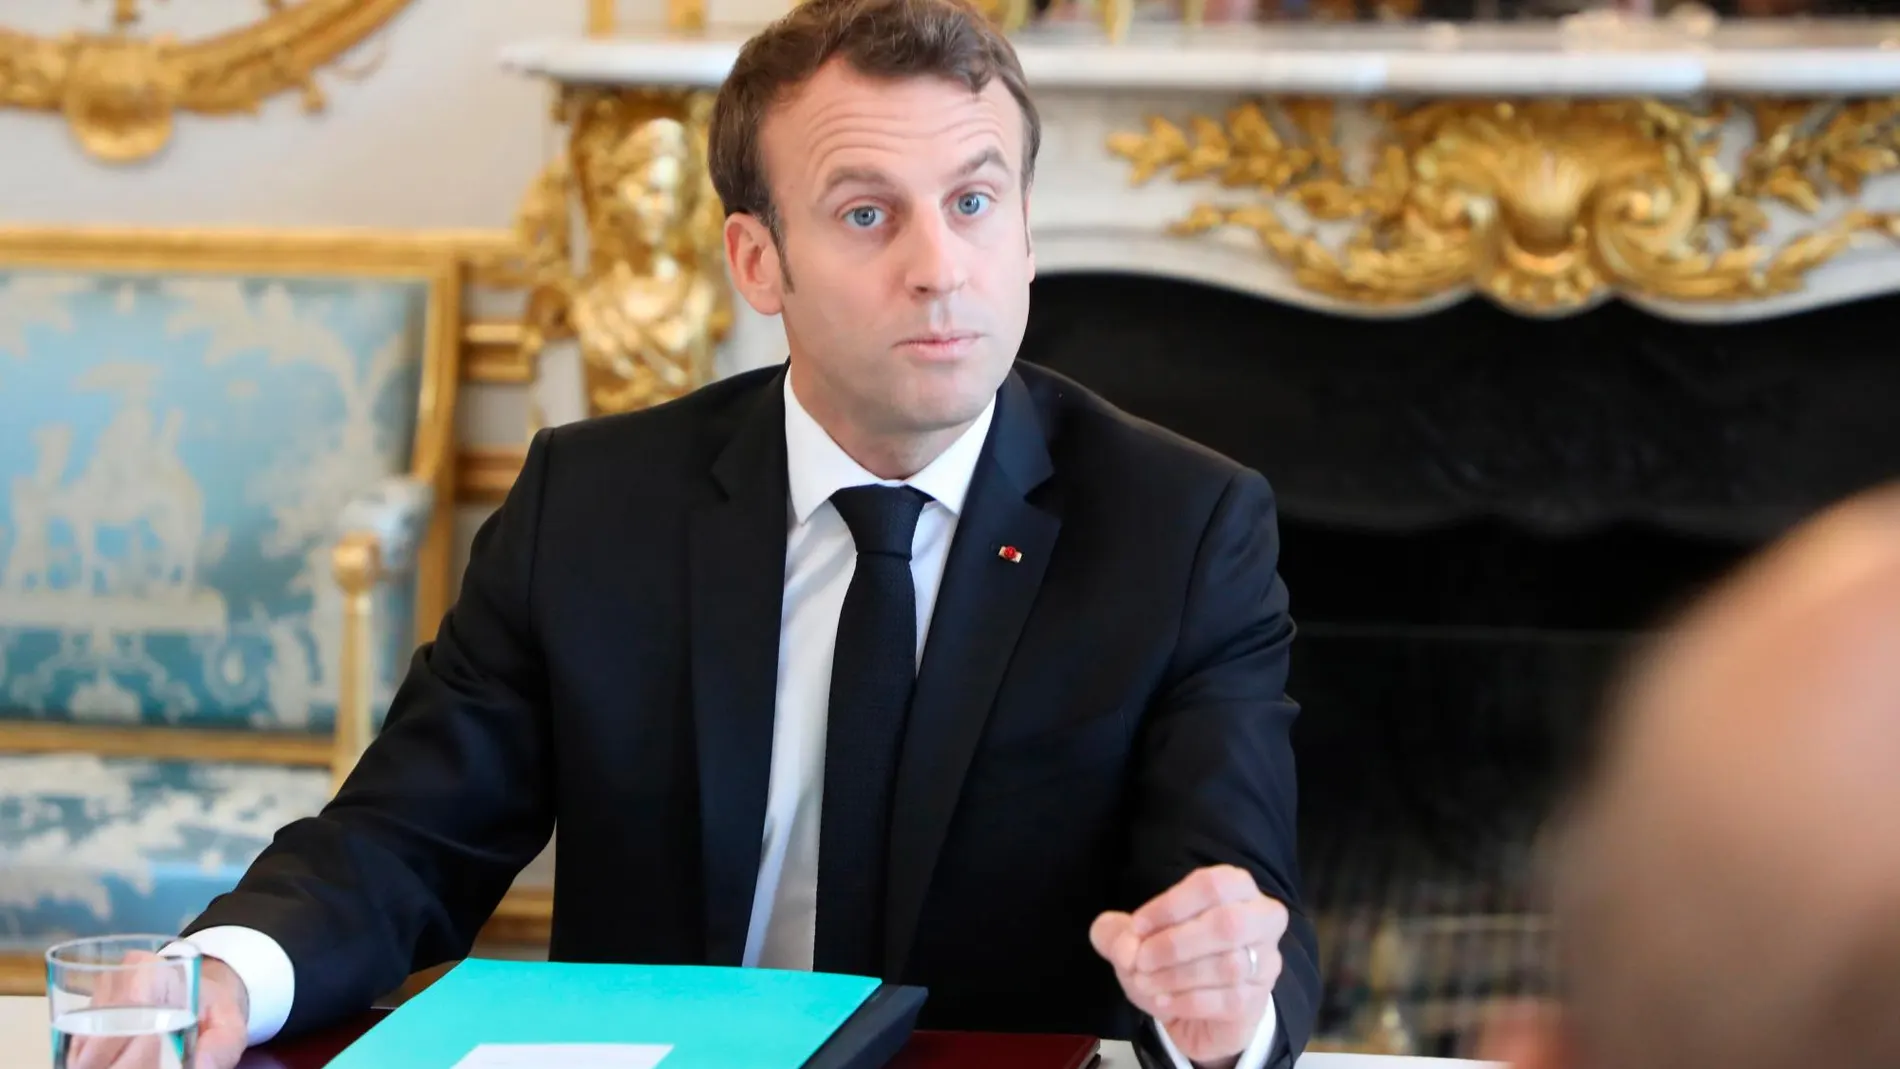 Emmanuel Macron preside una reunión en el Consejo de Ministros